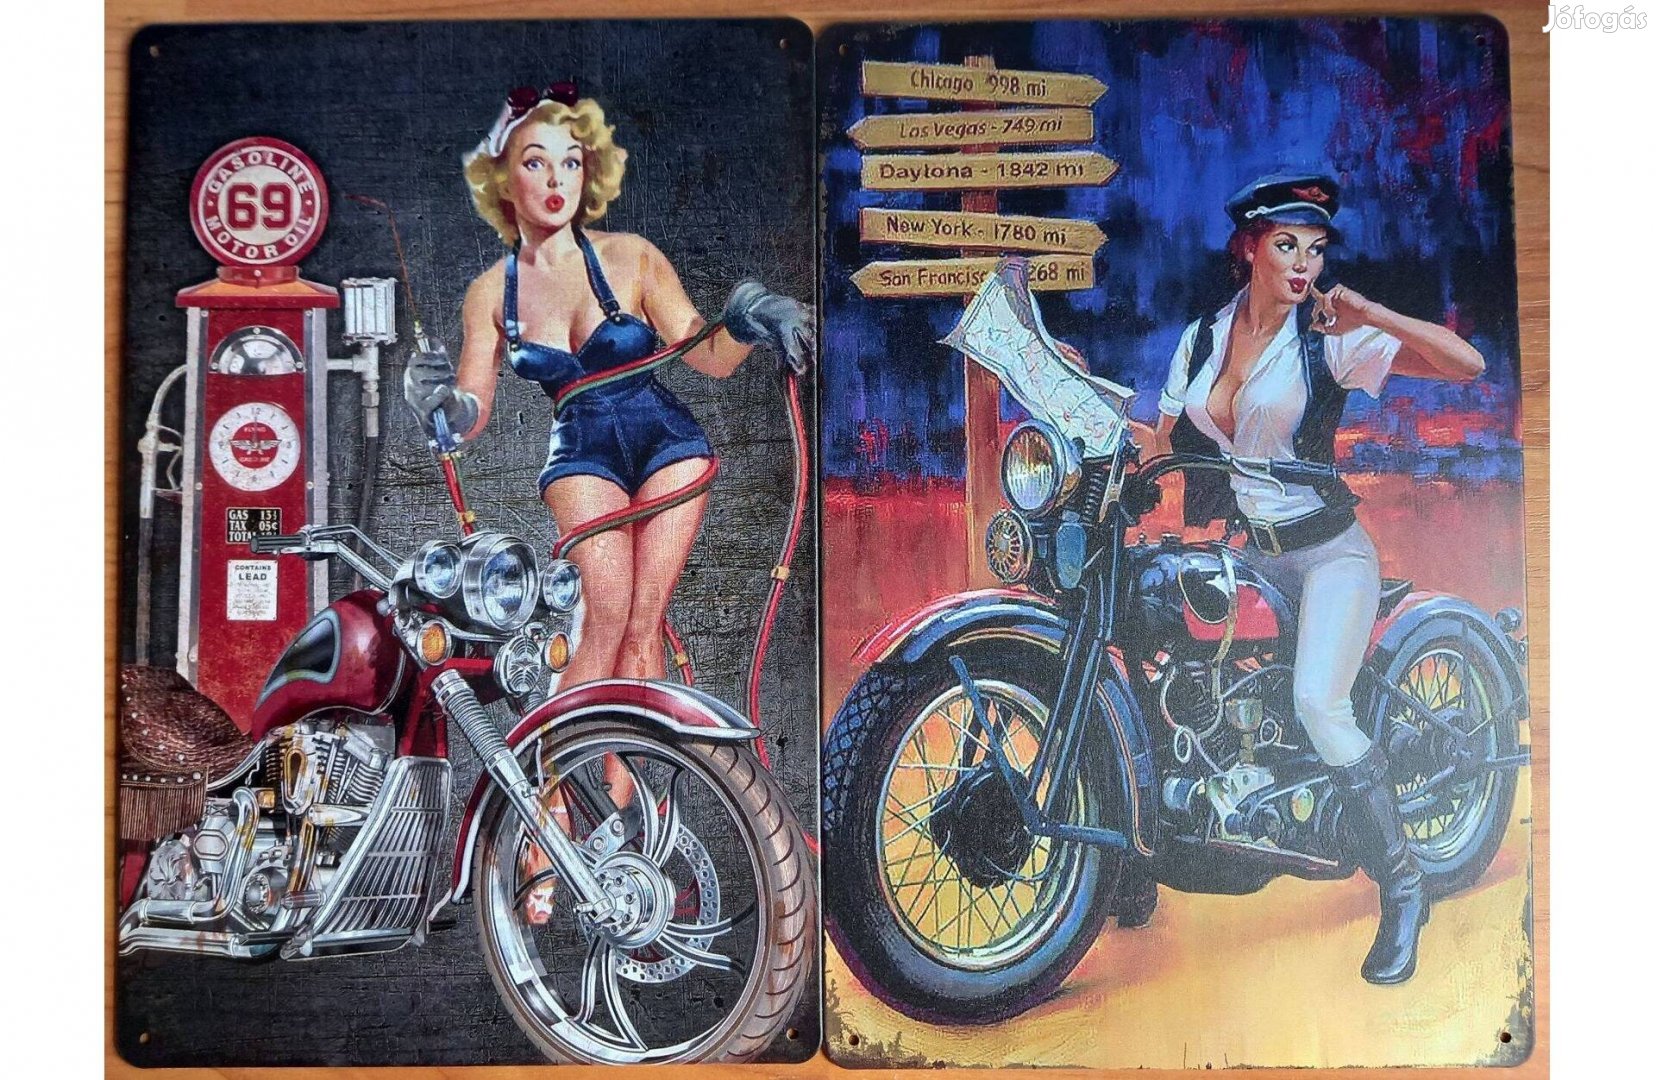 Dekorációs fém tábla (Flaying Gasoline És Motoroil - PIN-UP Girls Moto